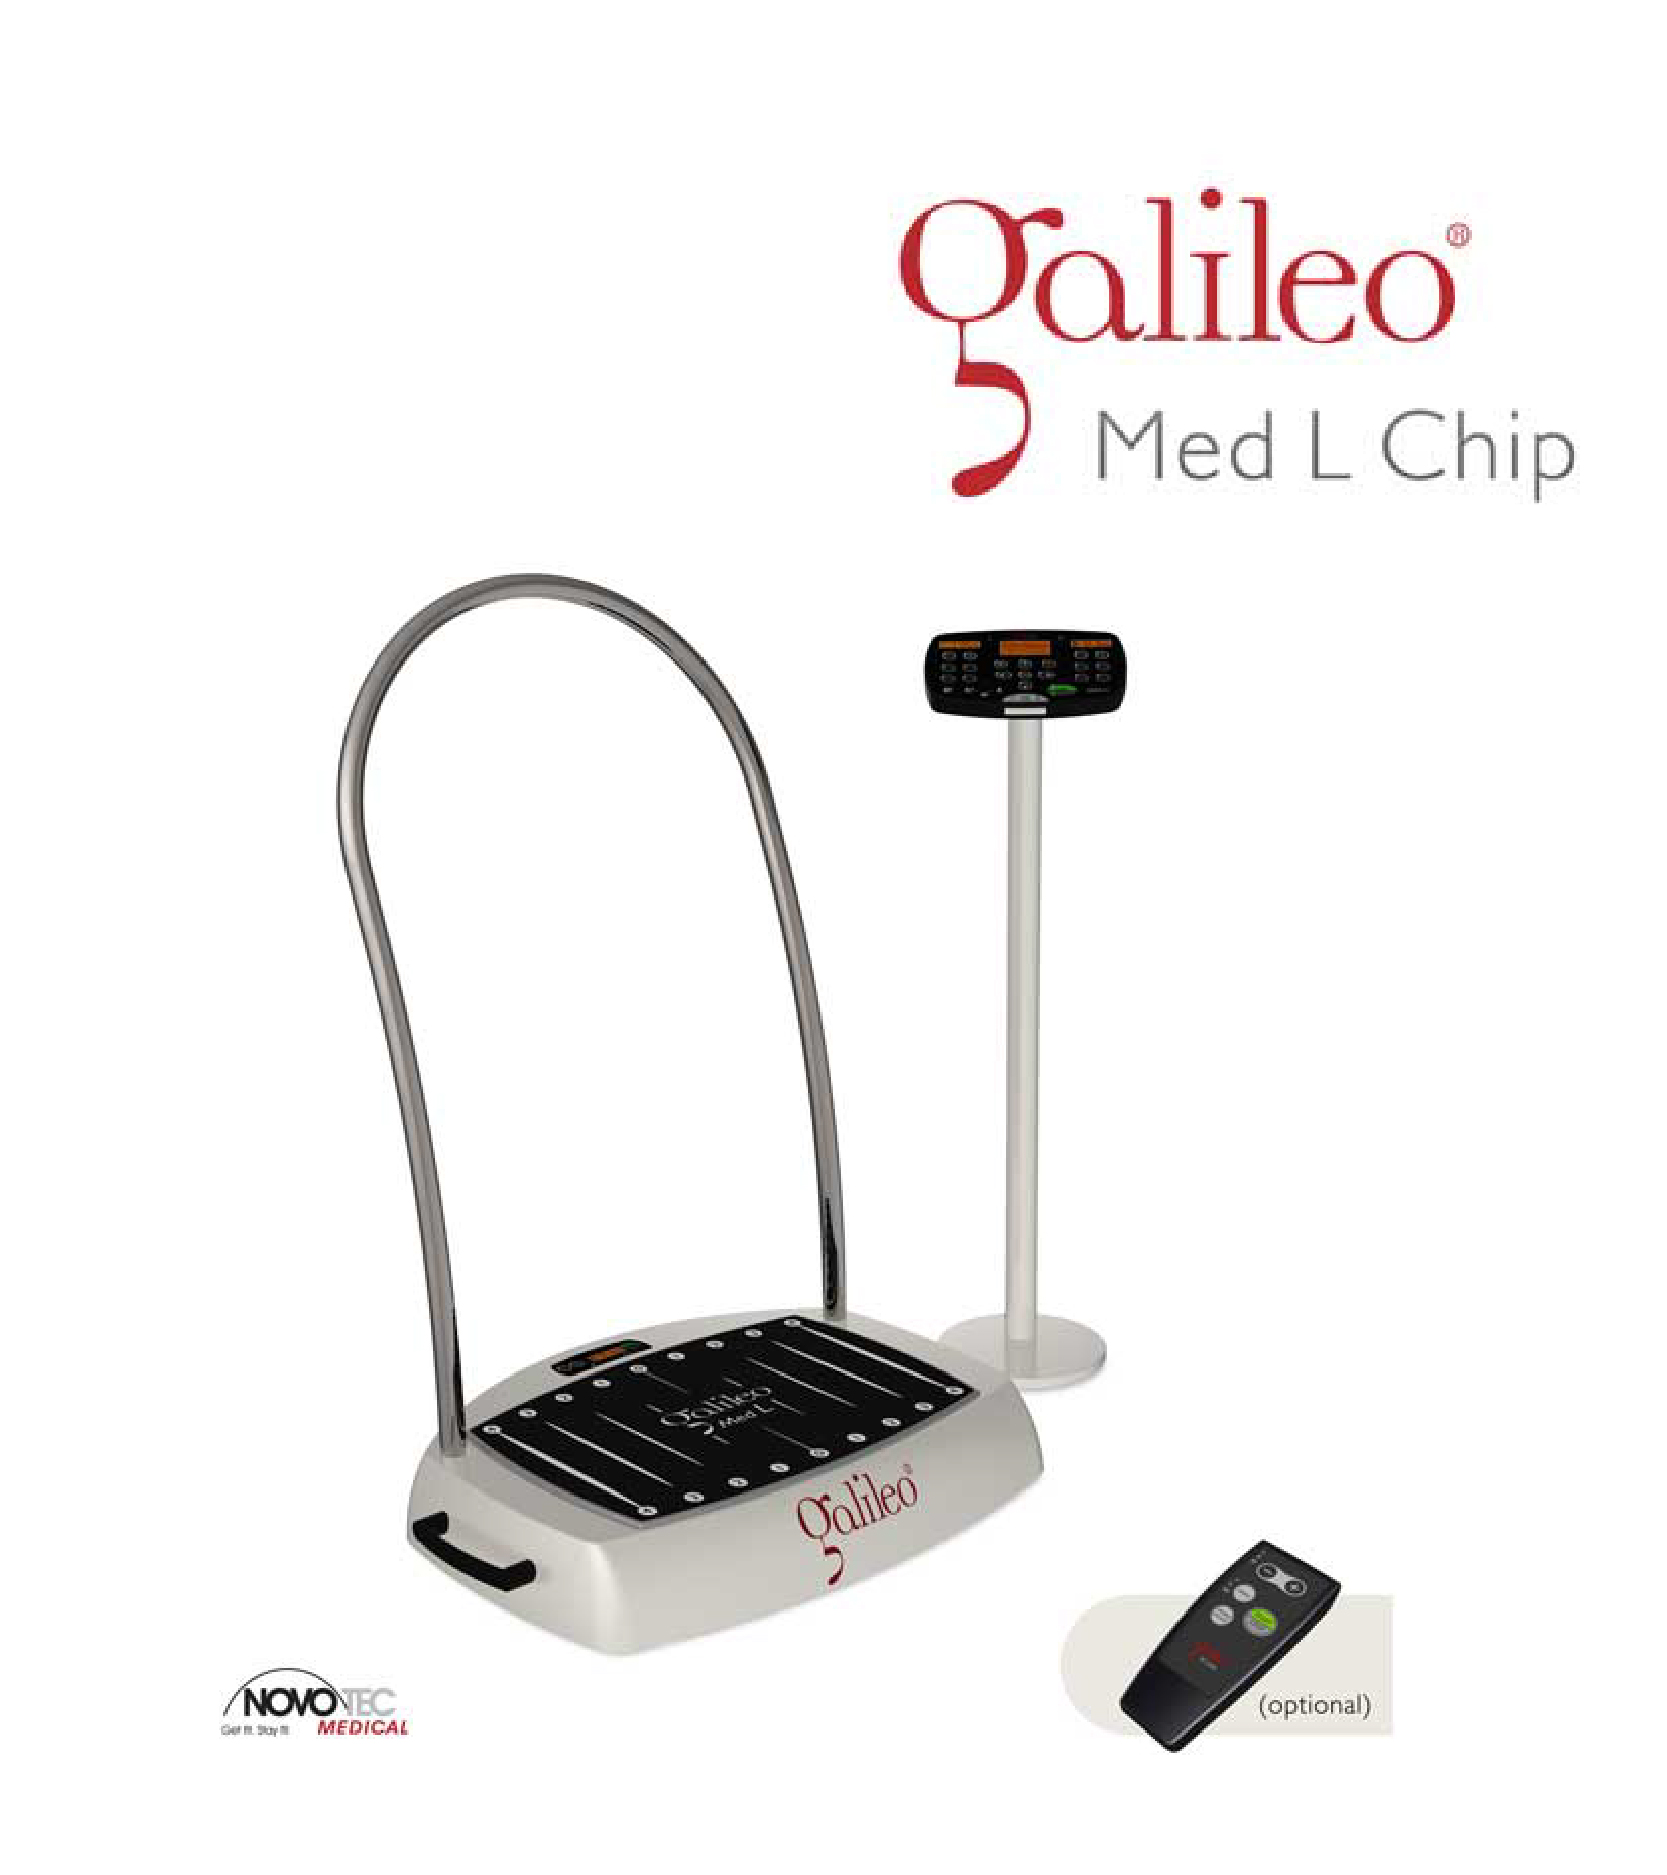 Galileo Med L Chip